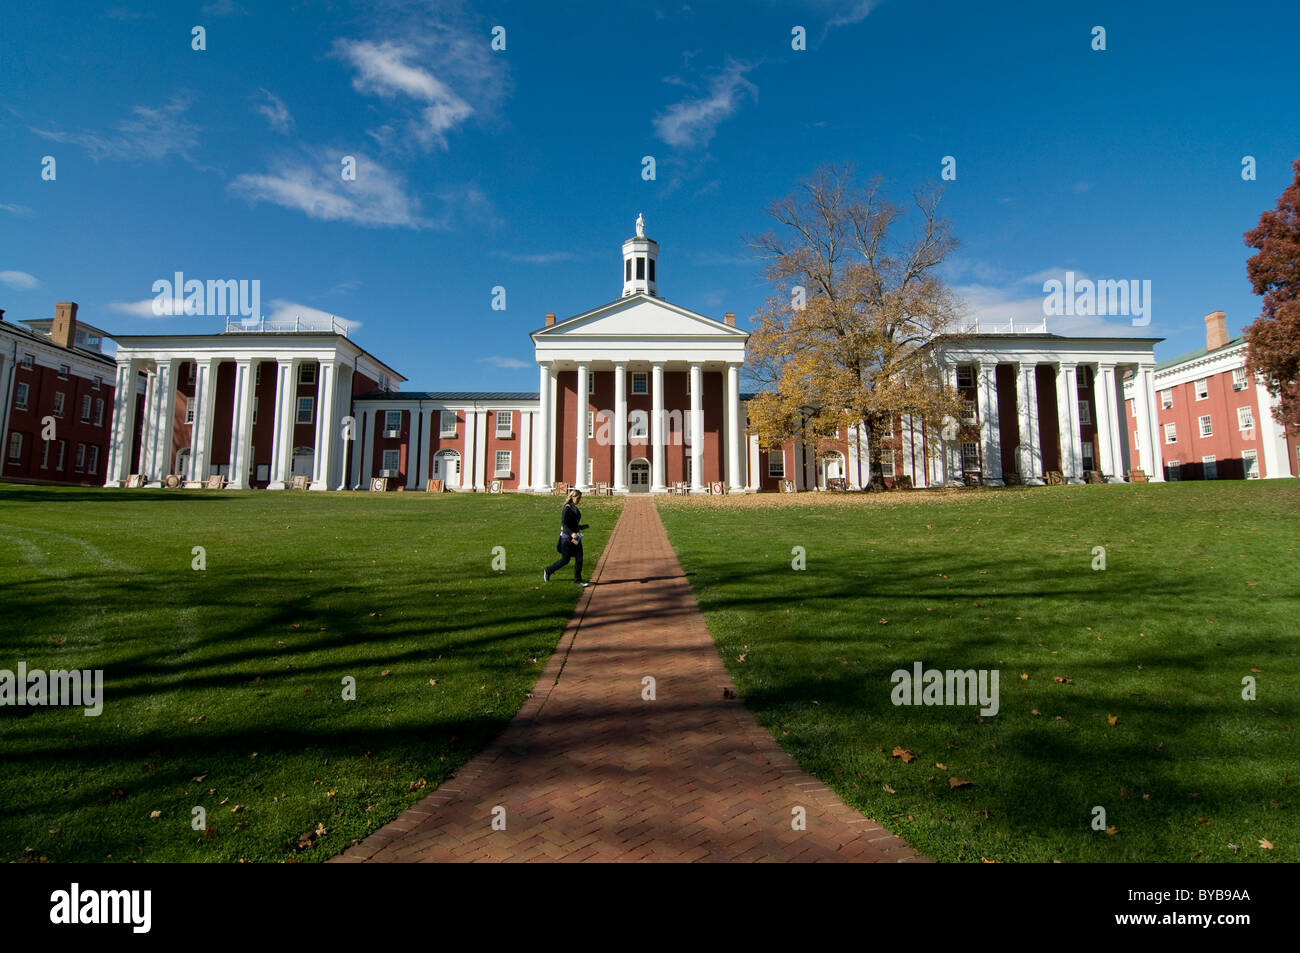 Campus of Washington and Lee University, Lexington, North Carolina, United States of America, Amerika Stock Photo